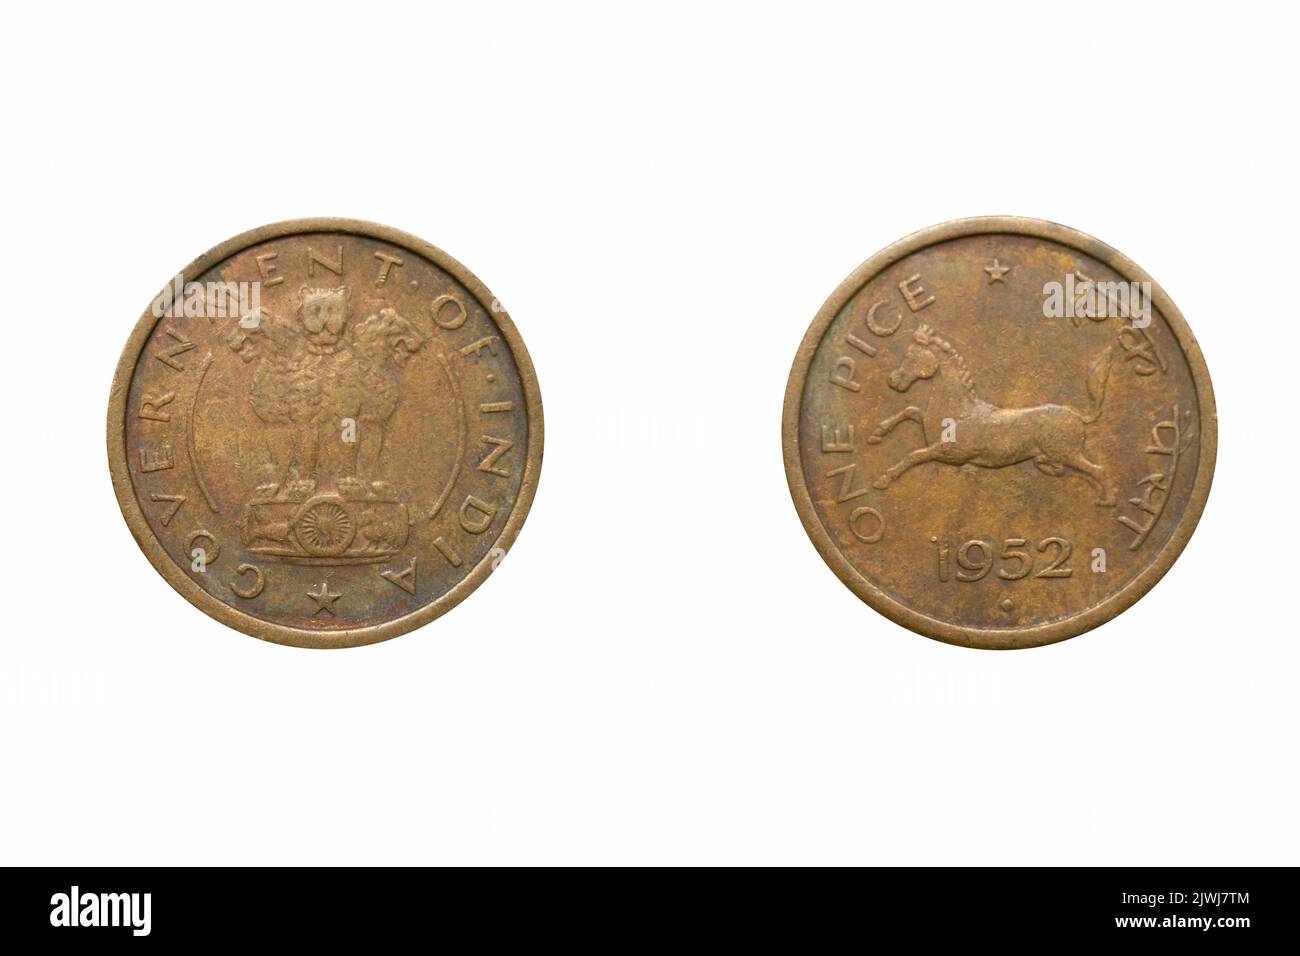 Une pièce de monnaie année 1952, avant et arrière, Inde Banque D'Images